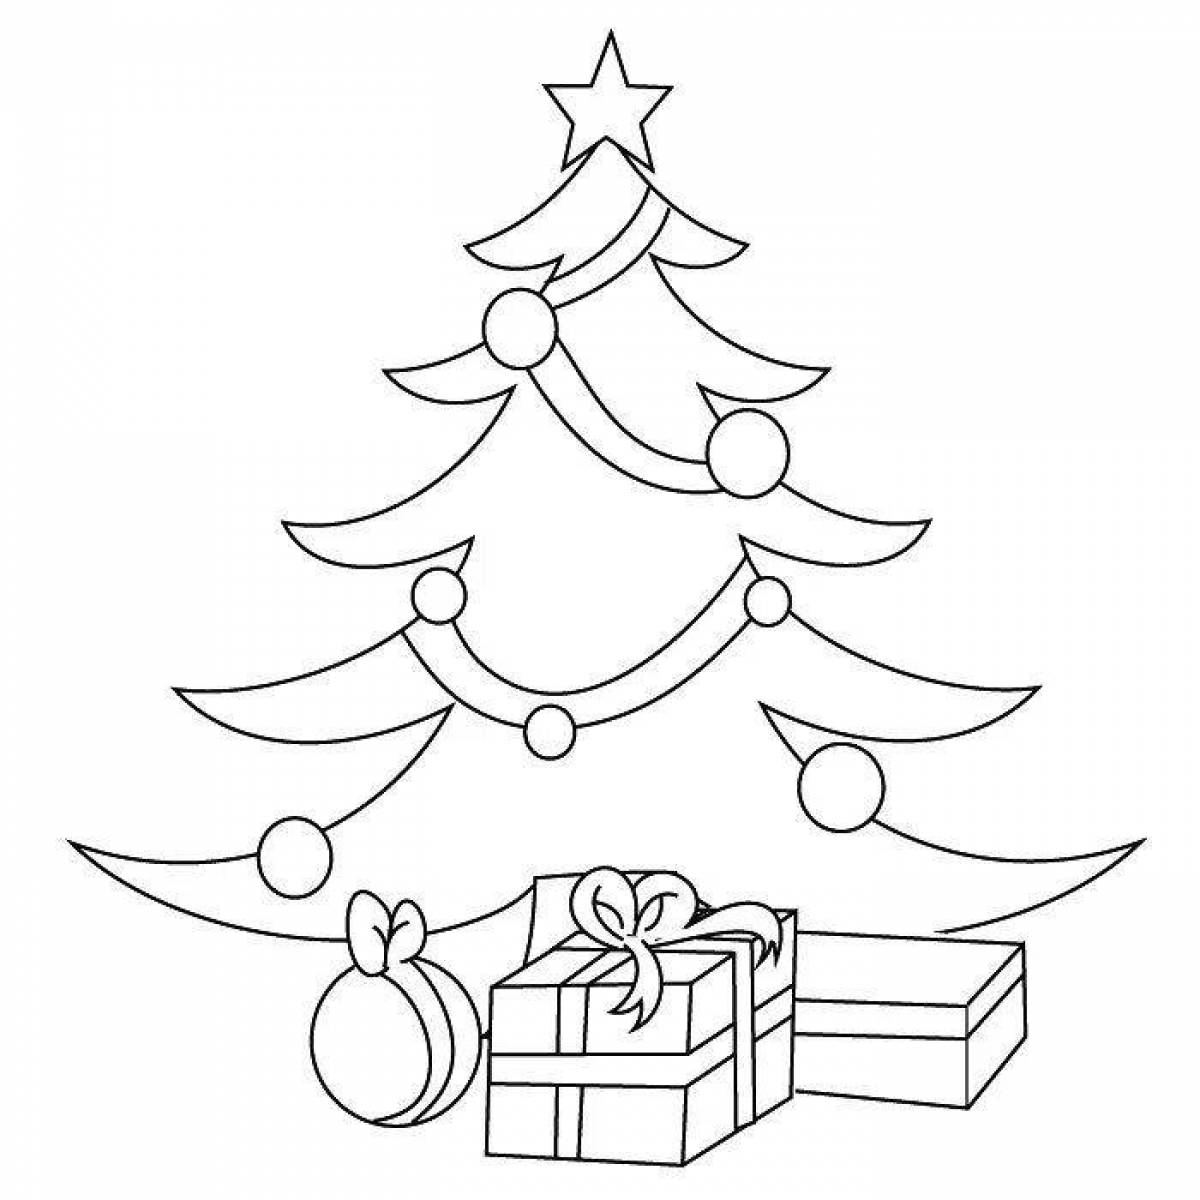 Joyful Christmas tree with gifts